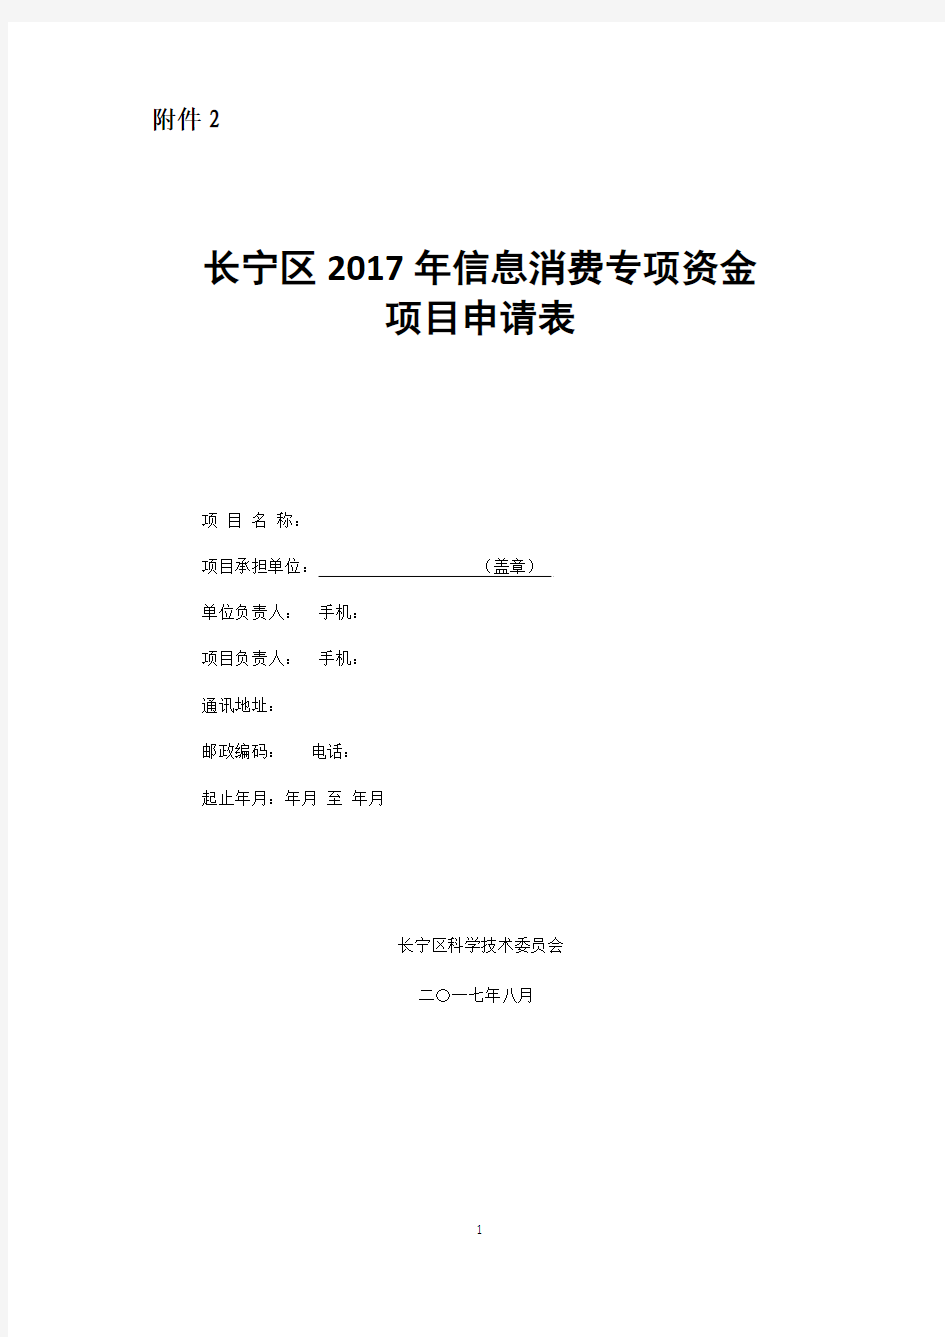 长宁区2017年信息消费专项资金申请表